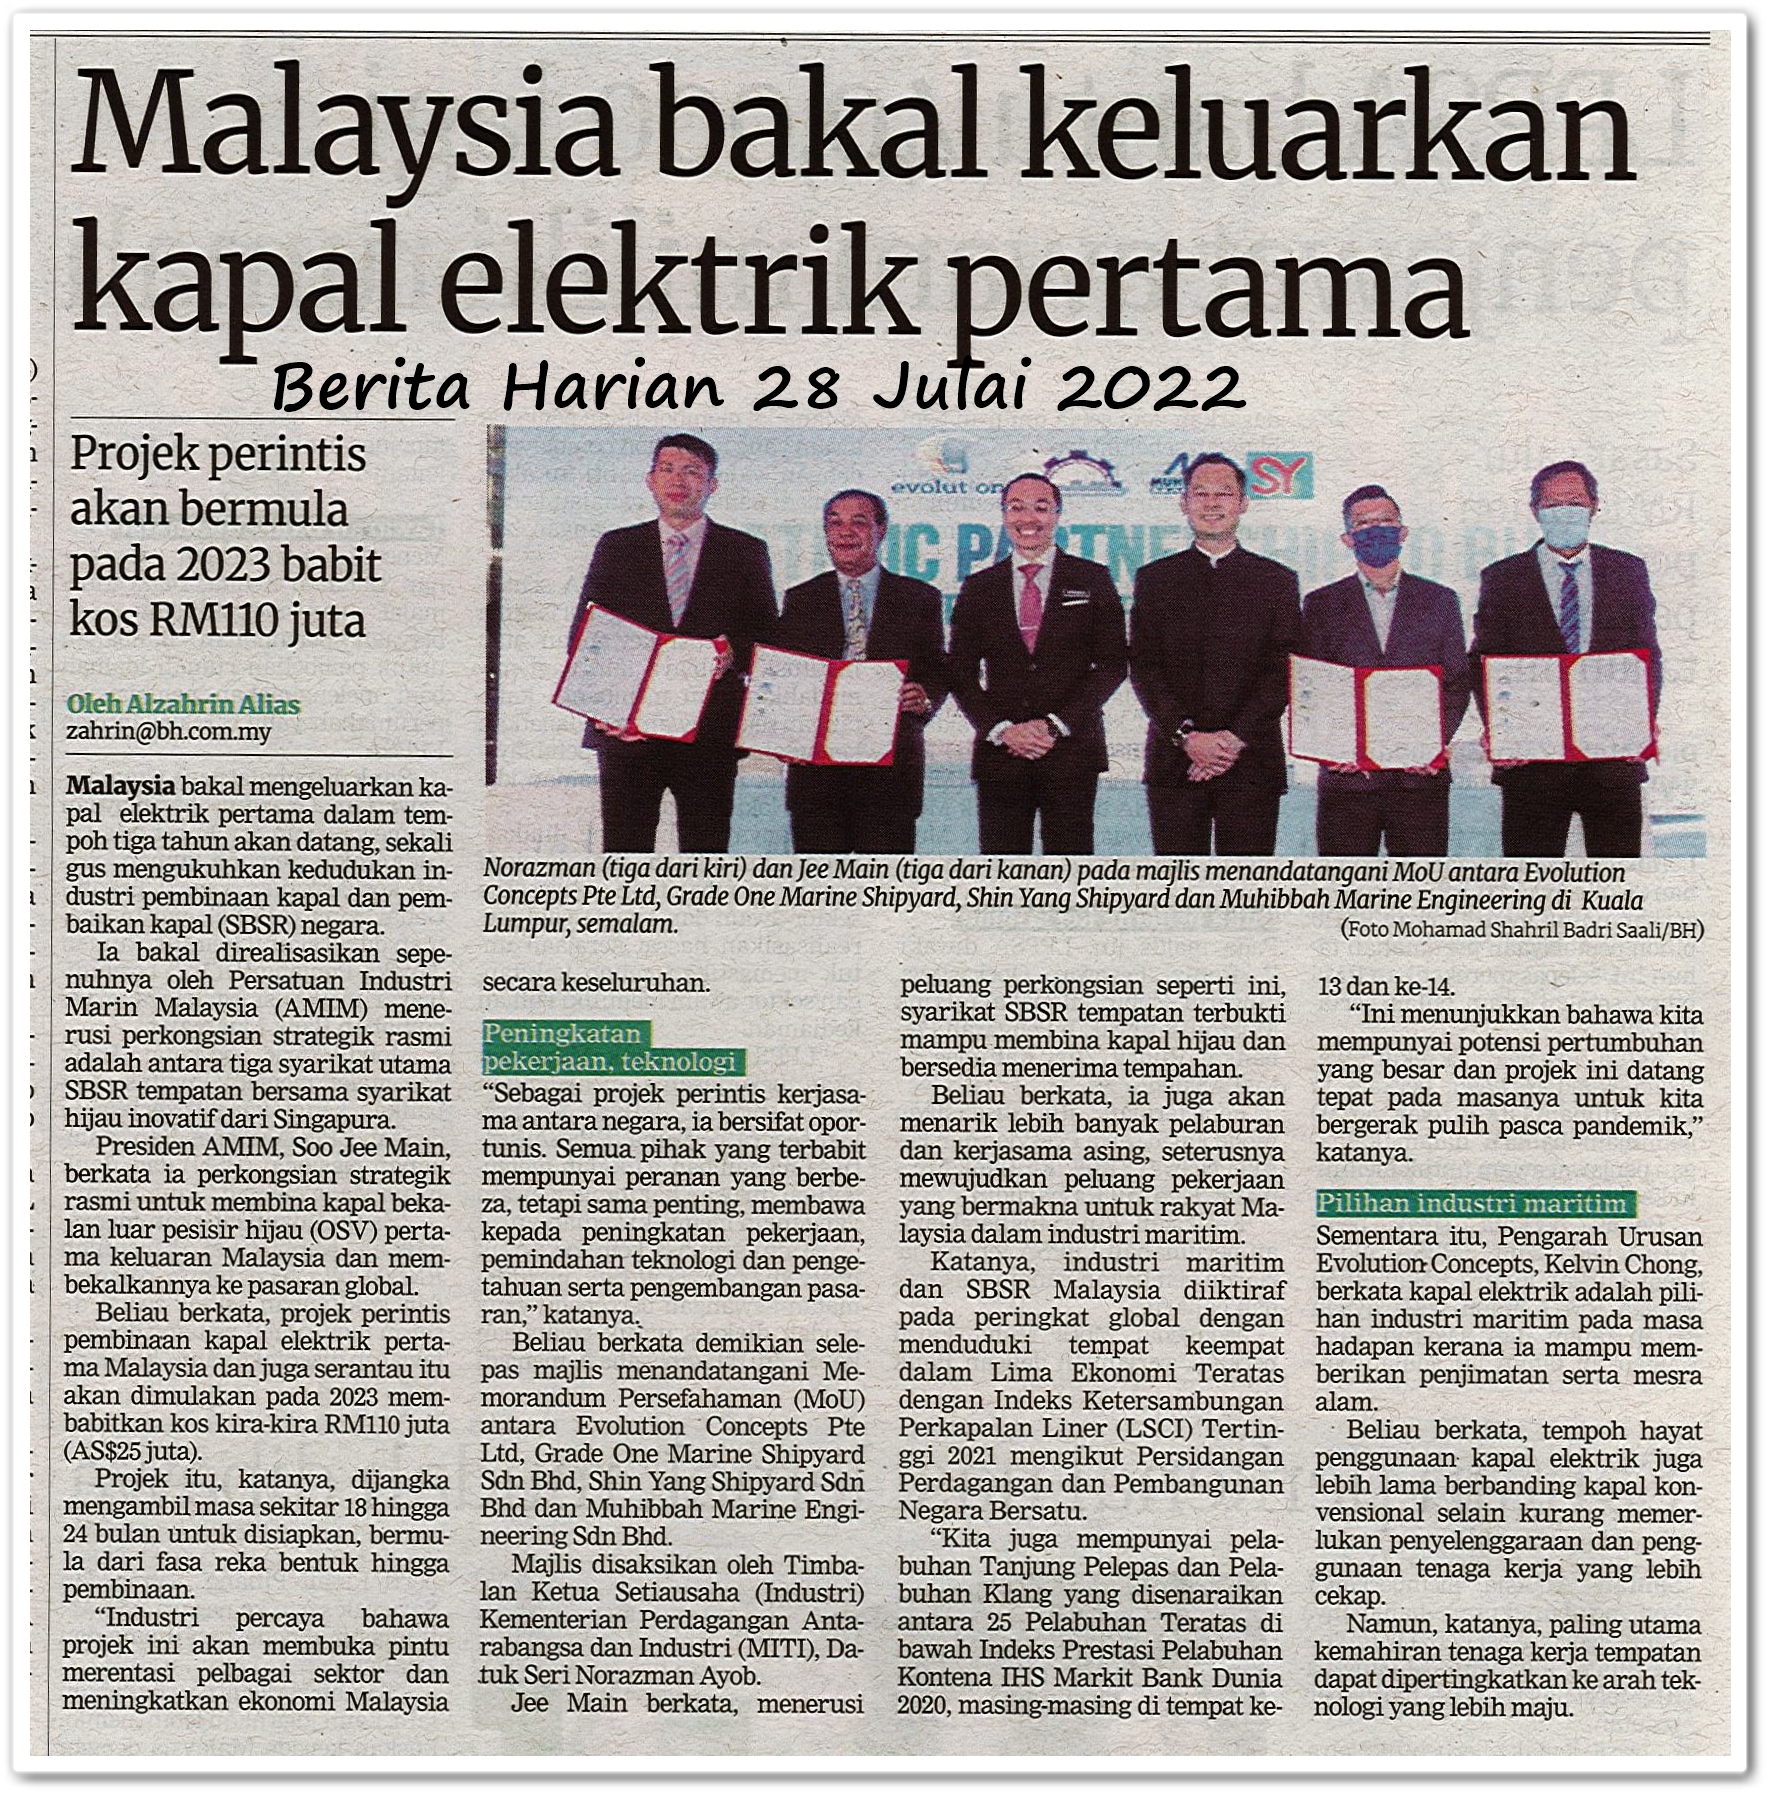 Malaysia bakal keluarkan kapal elektrik pertama - Keratan akhbar Berita Harian 28 Julai 2022